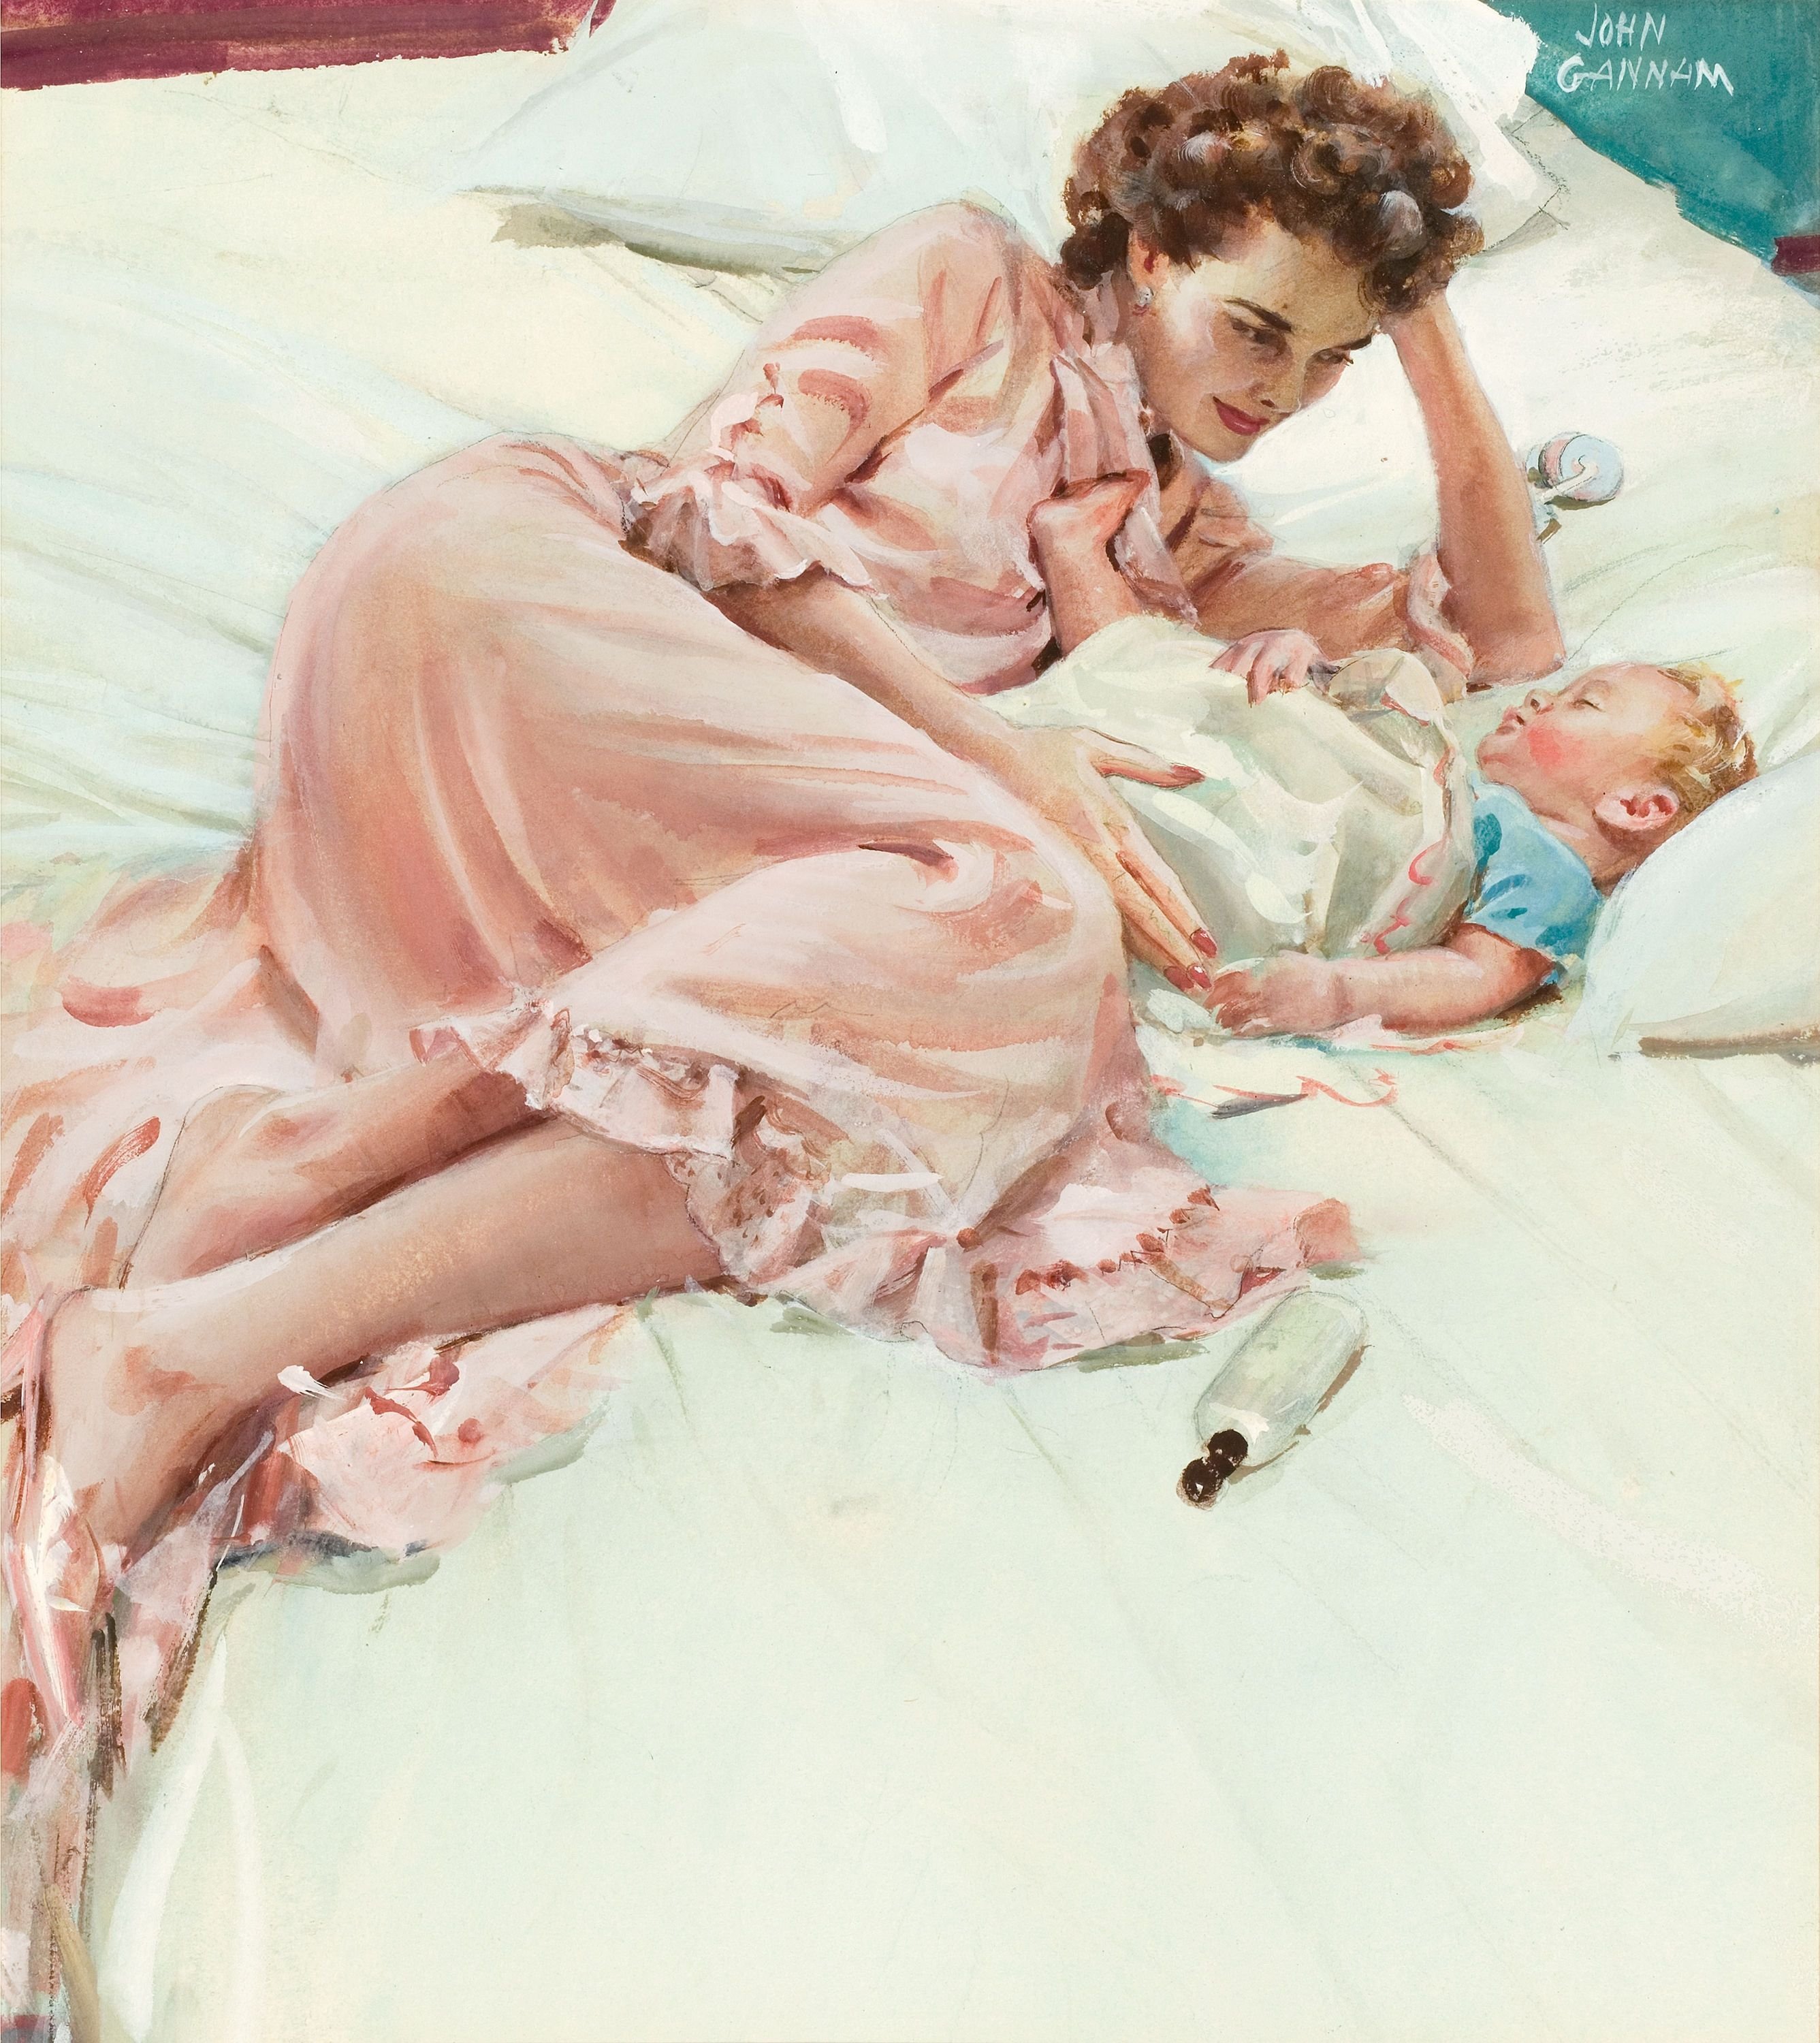 Спящие сын ретро. Джон Ганнам. John Gannam картины. Стив Хэнкс мать и дитя. Американский художник John Gannam(1907-1965).